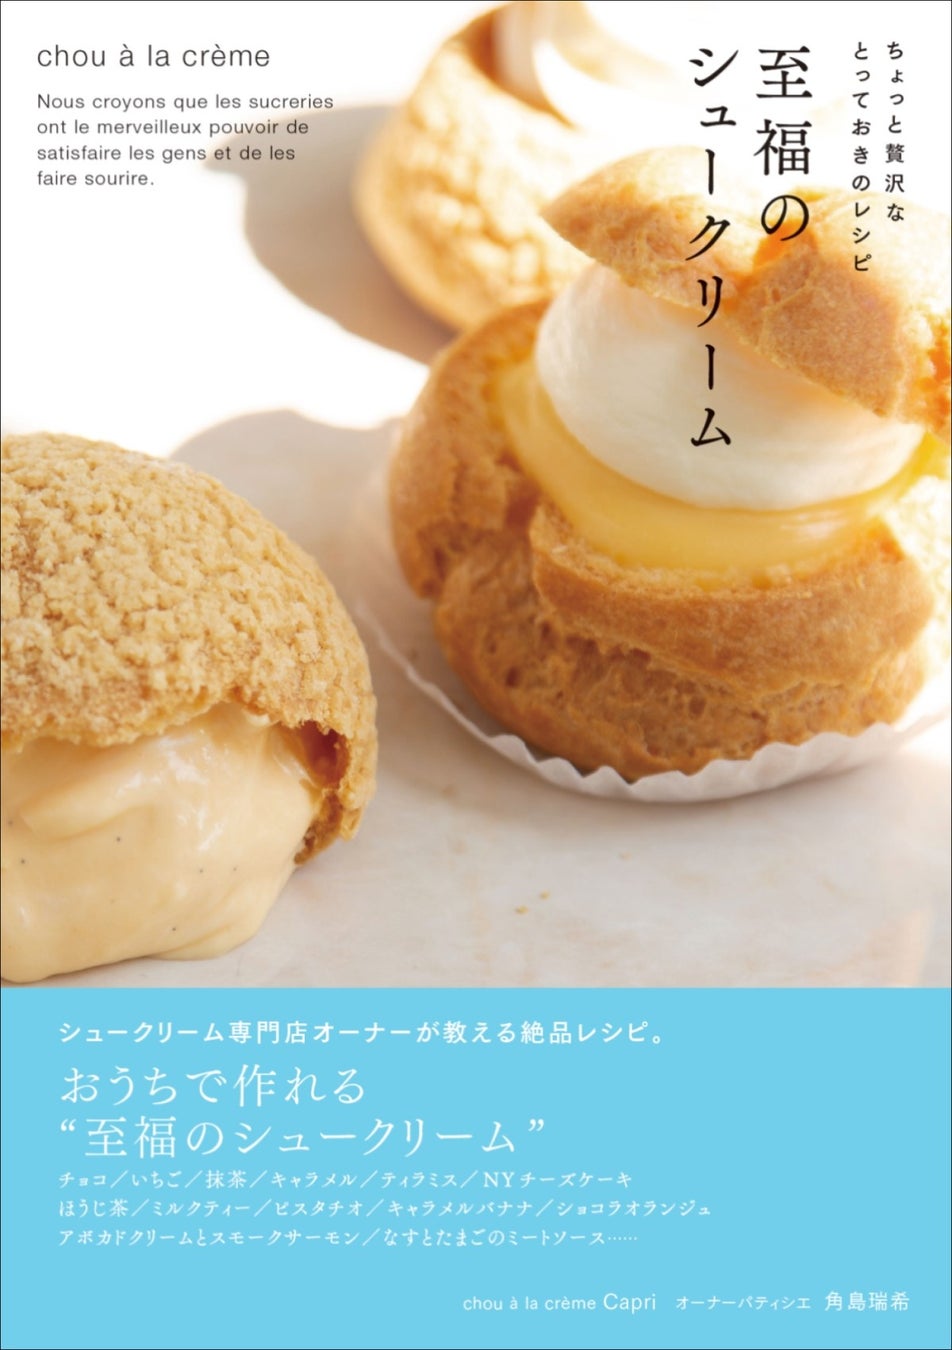 新進気鋭のパティシエ　角島瑞希が教える絶品シュークリームレシピ！　『ちょっと贅沢なとっておきのレシピ 至福のシュークリーム』が発売